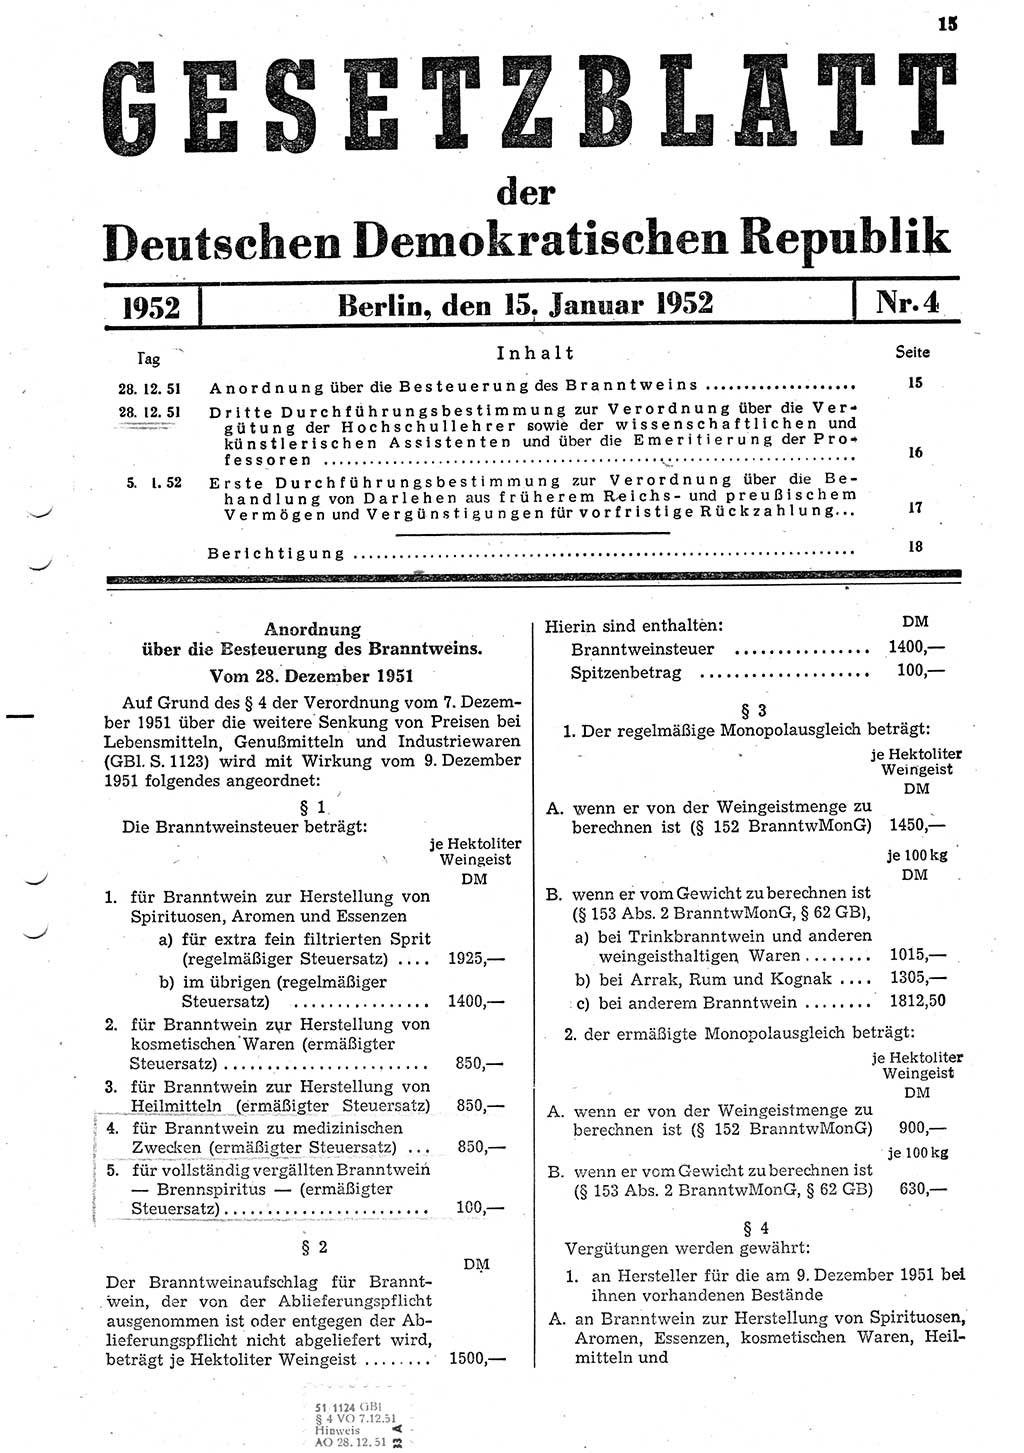 Gesetzblatt (GBl.) der Deutschen Demokratischen Republik (DDR) 1952, Seite 15 (GBl. DDR 1952, S. 15)